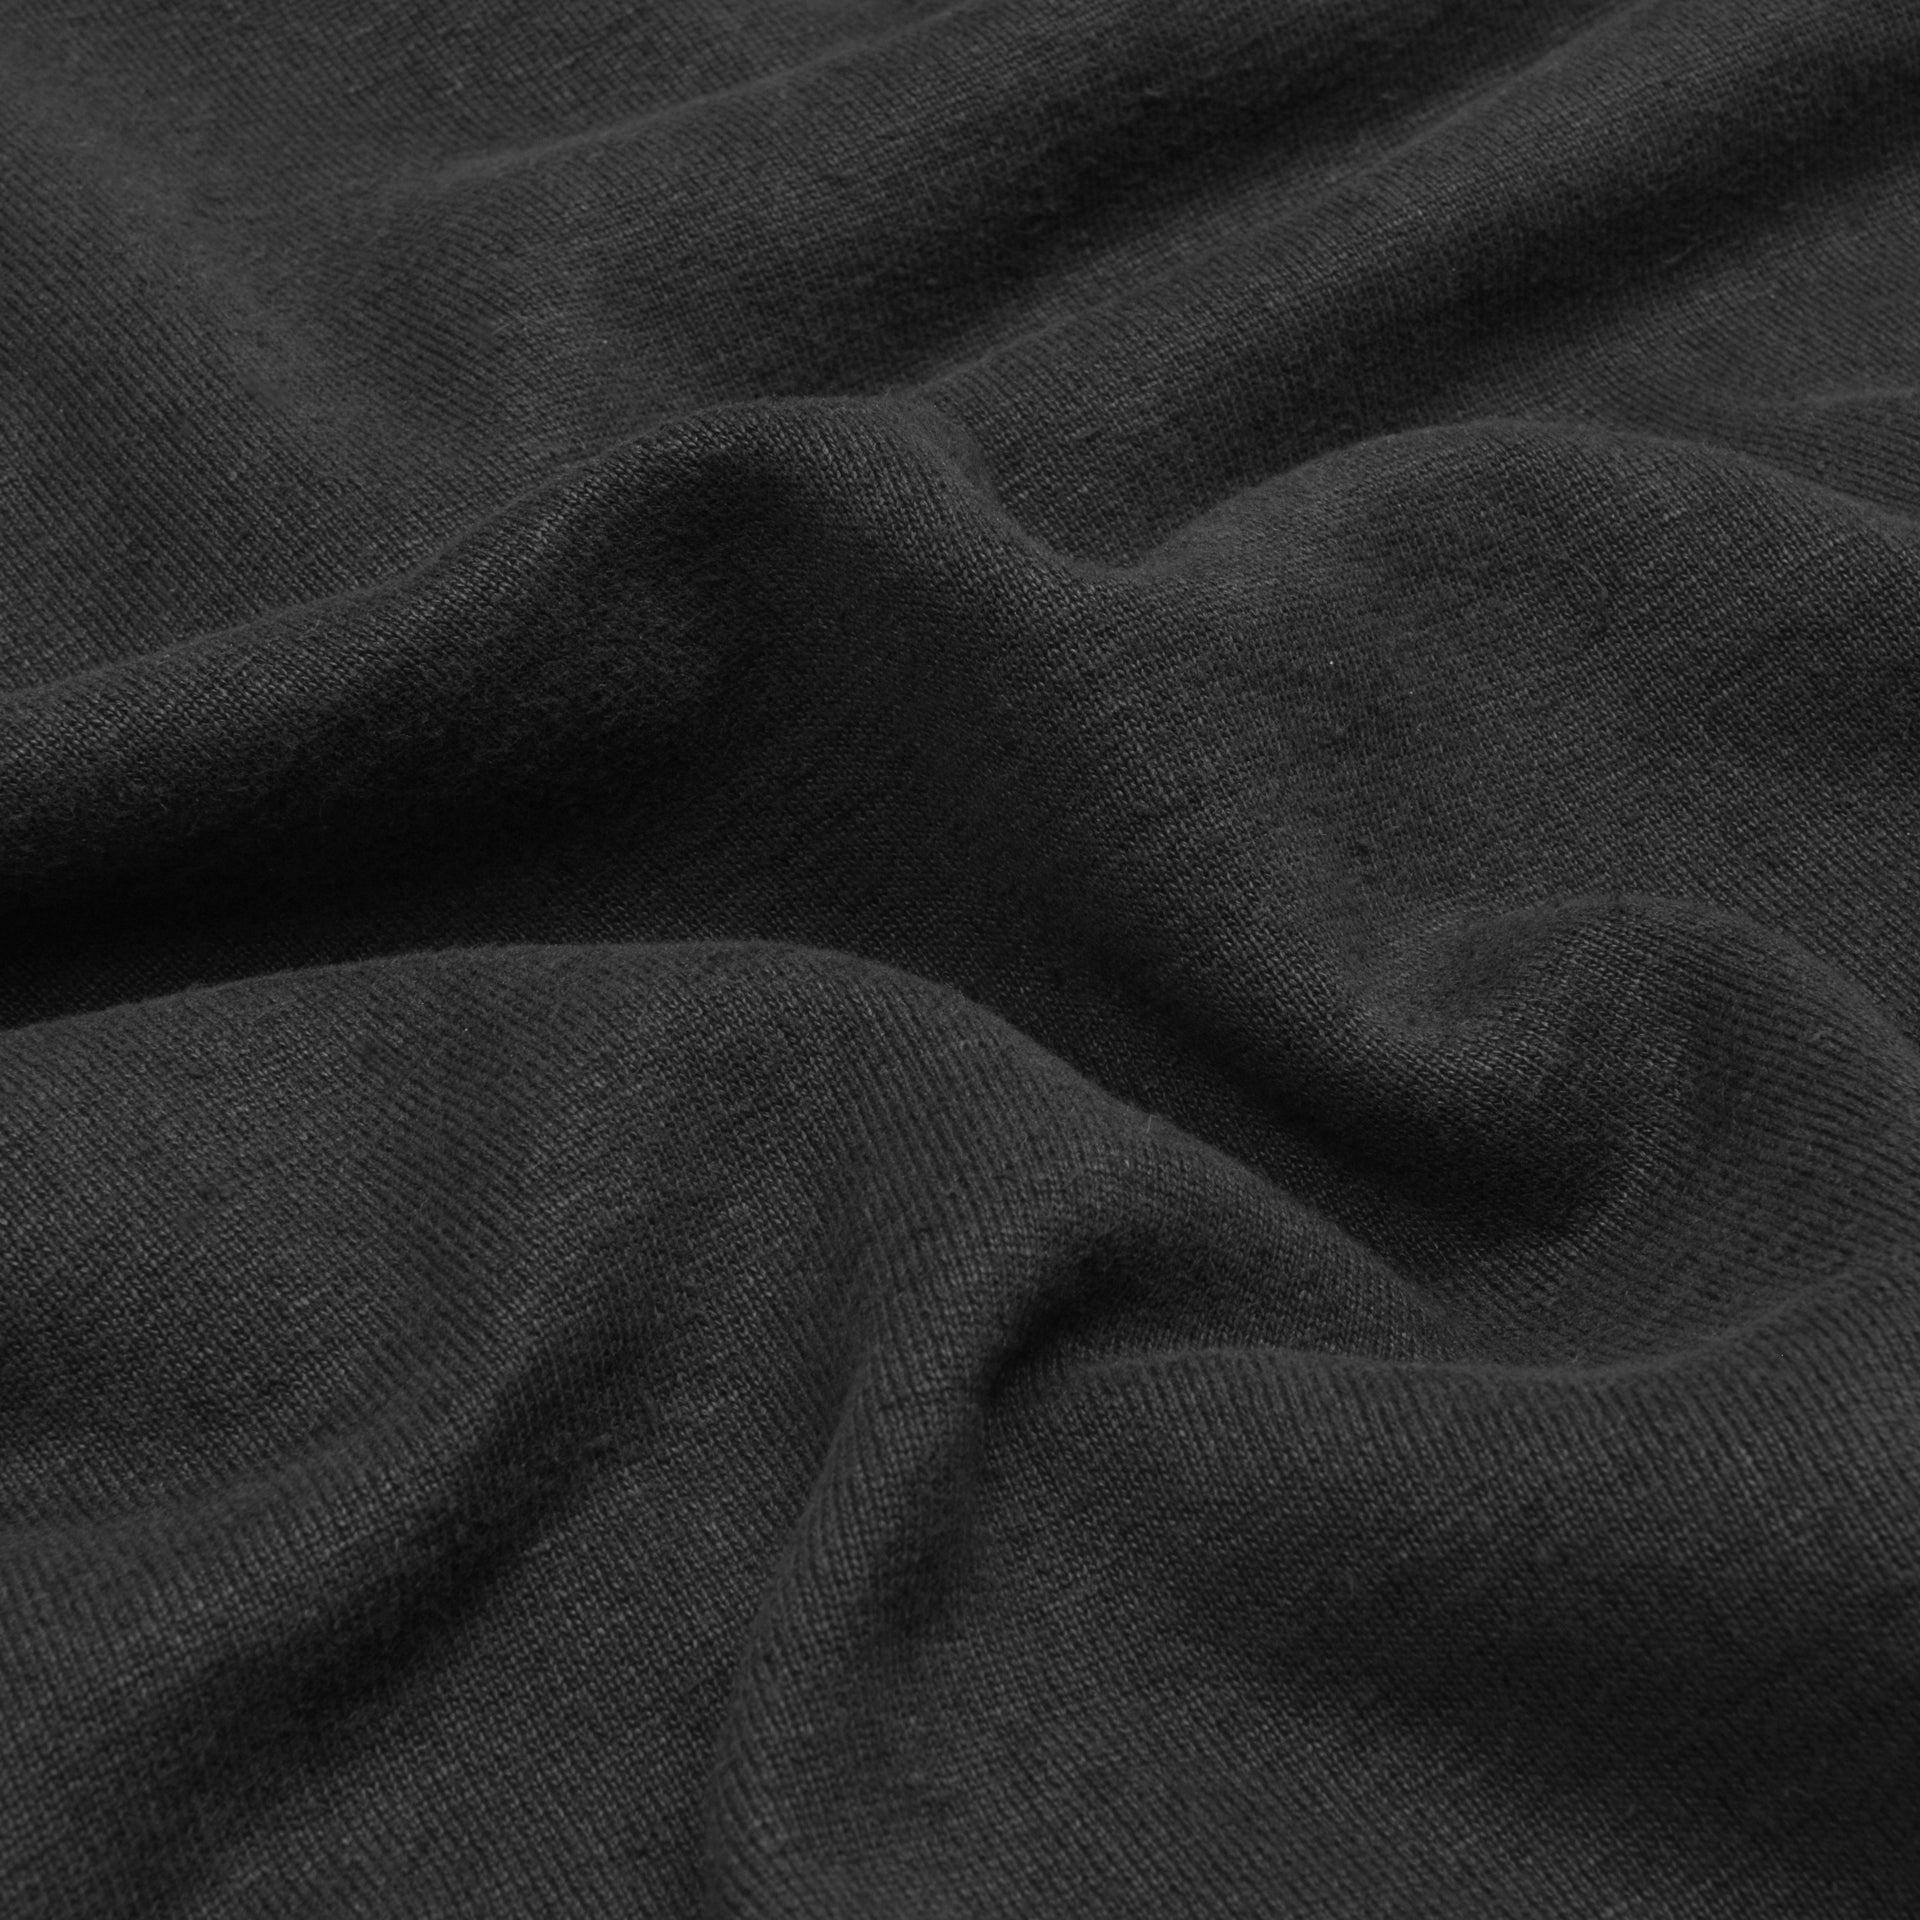 Black noir hoodie quality hemp material zoomed in